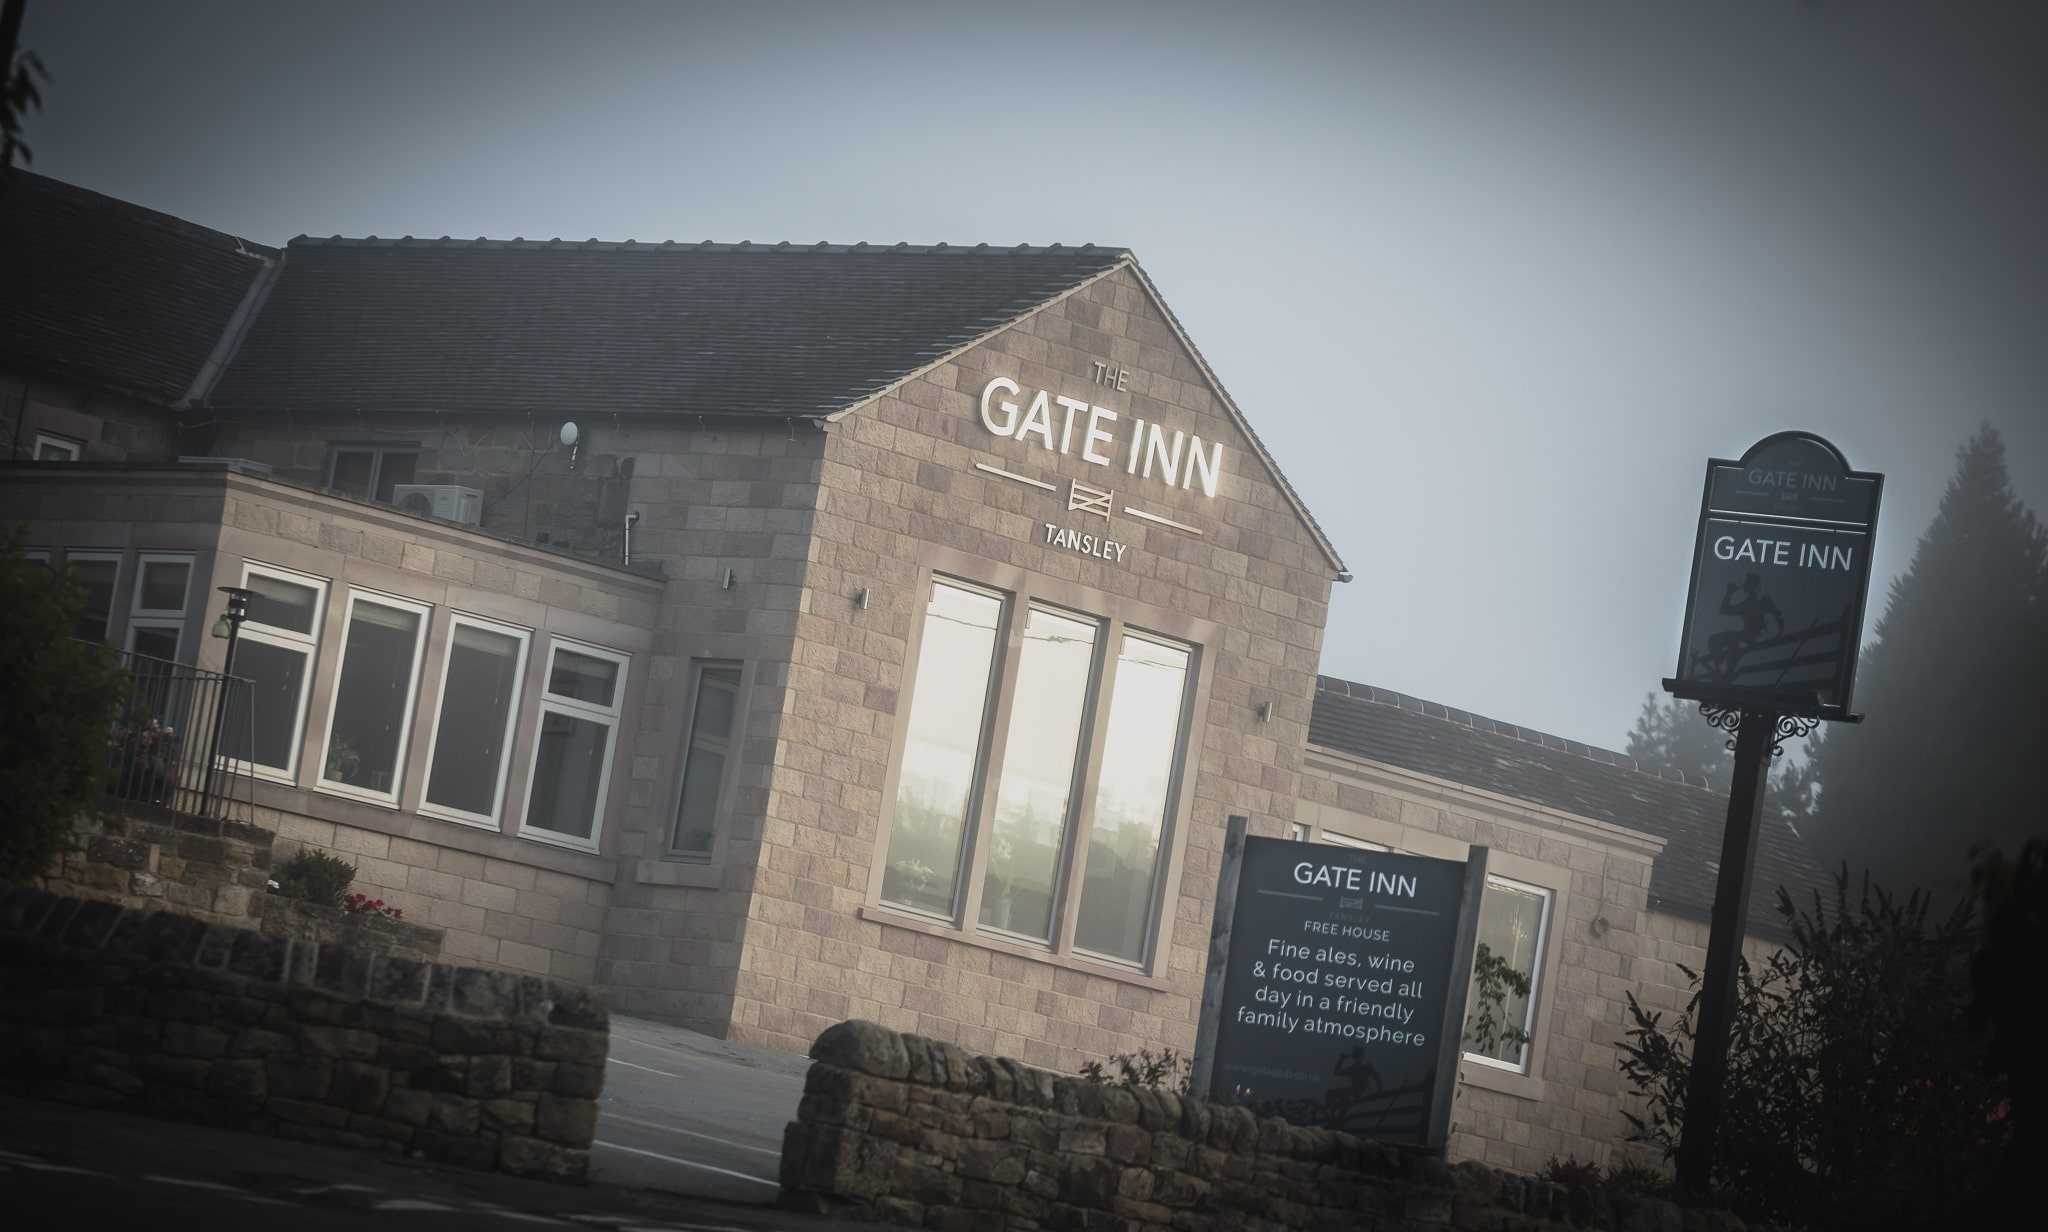 The Gate Inn Tansley